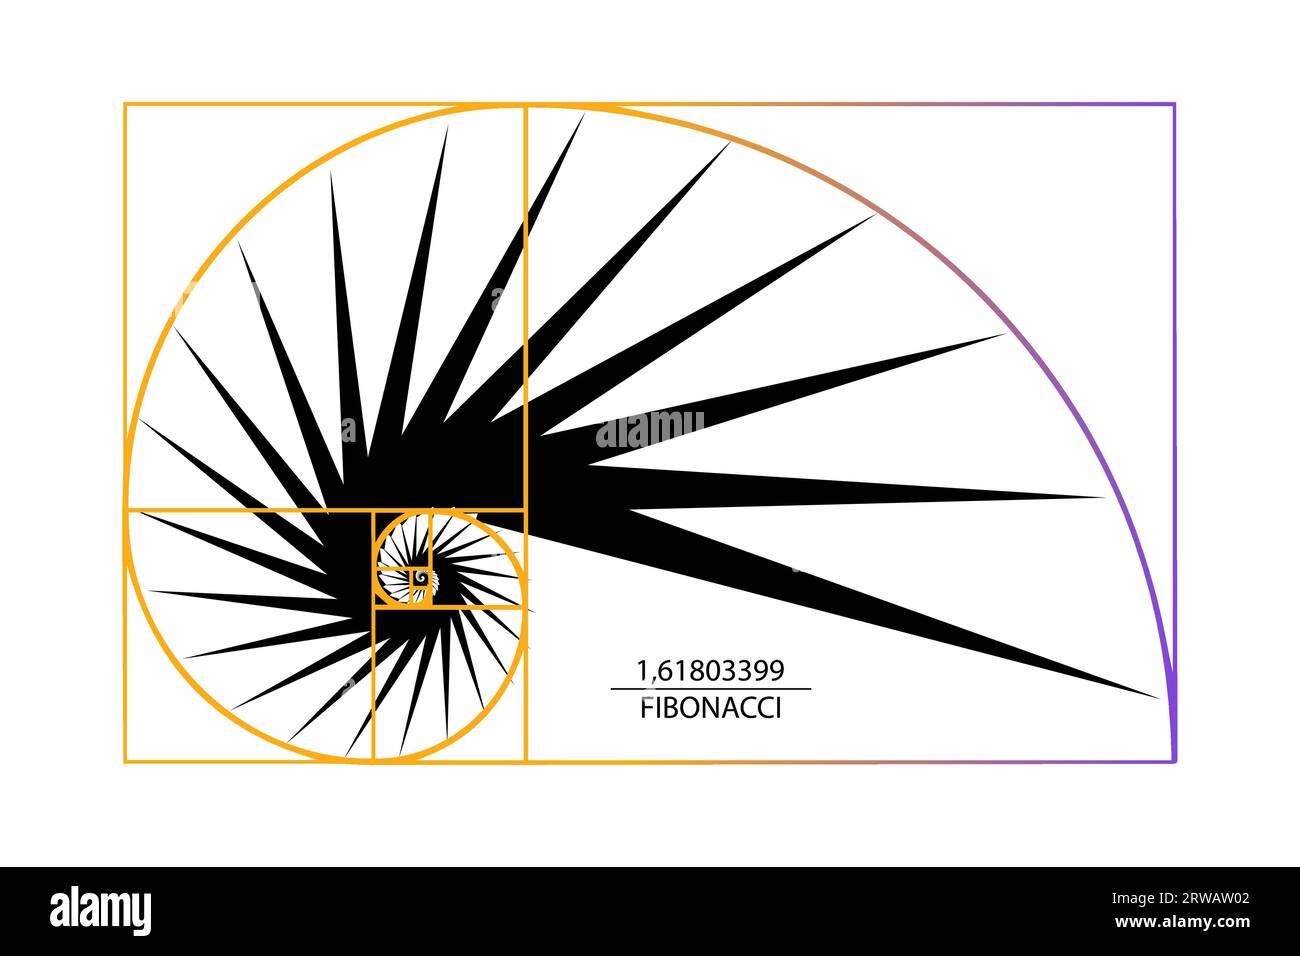 Sequenza dei numeri di Fibonacci. Golden ratio. Forme geometriche a spirale. Spirale di lumaca. Conchiglia marina di triangoli neri. Modello logo a geometria sacra. Logaritmo Illustrazione Vettoriale